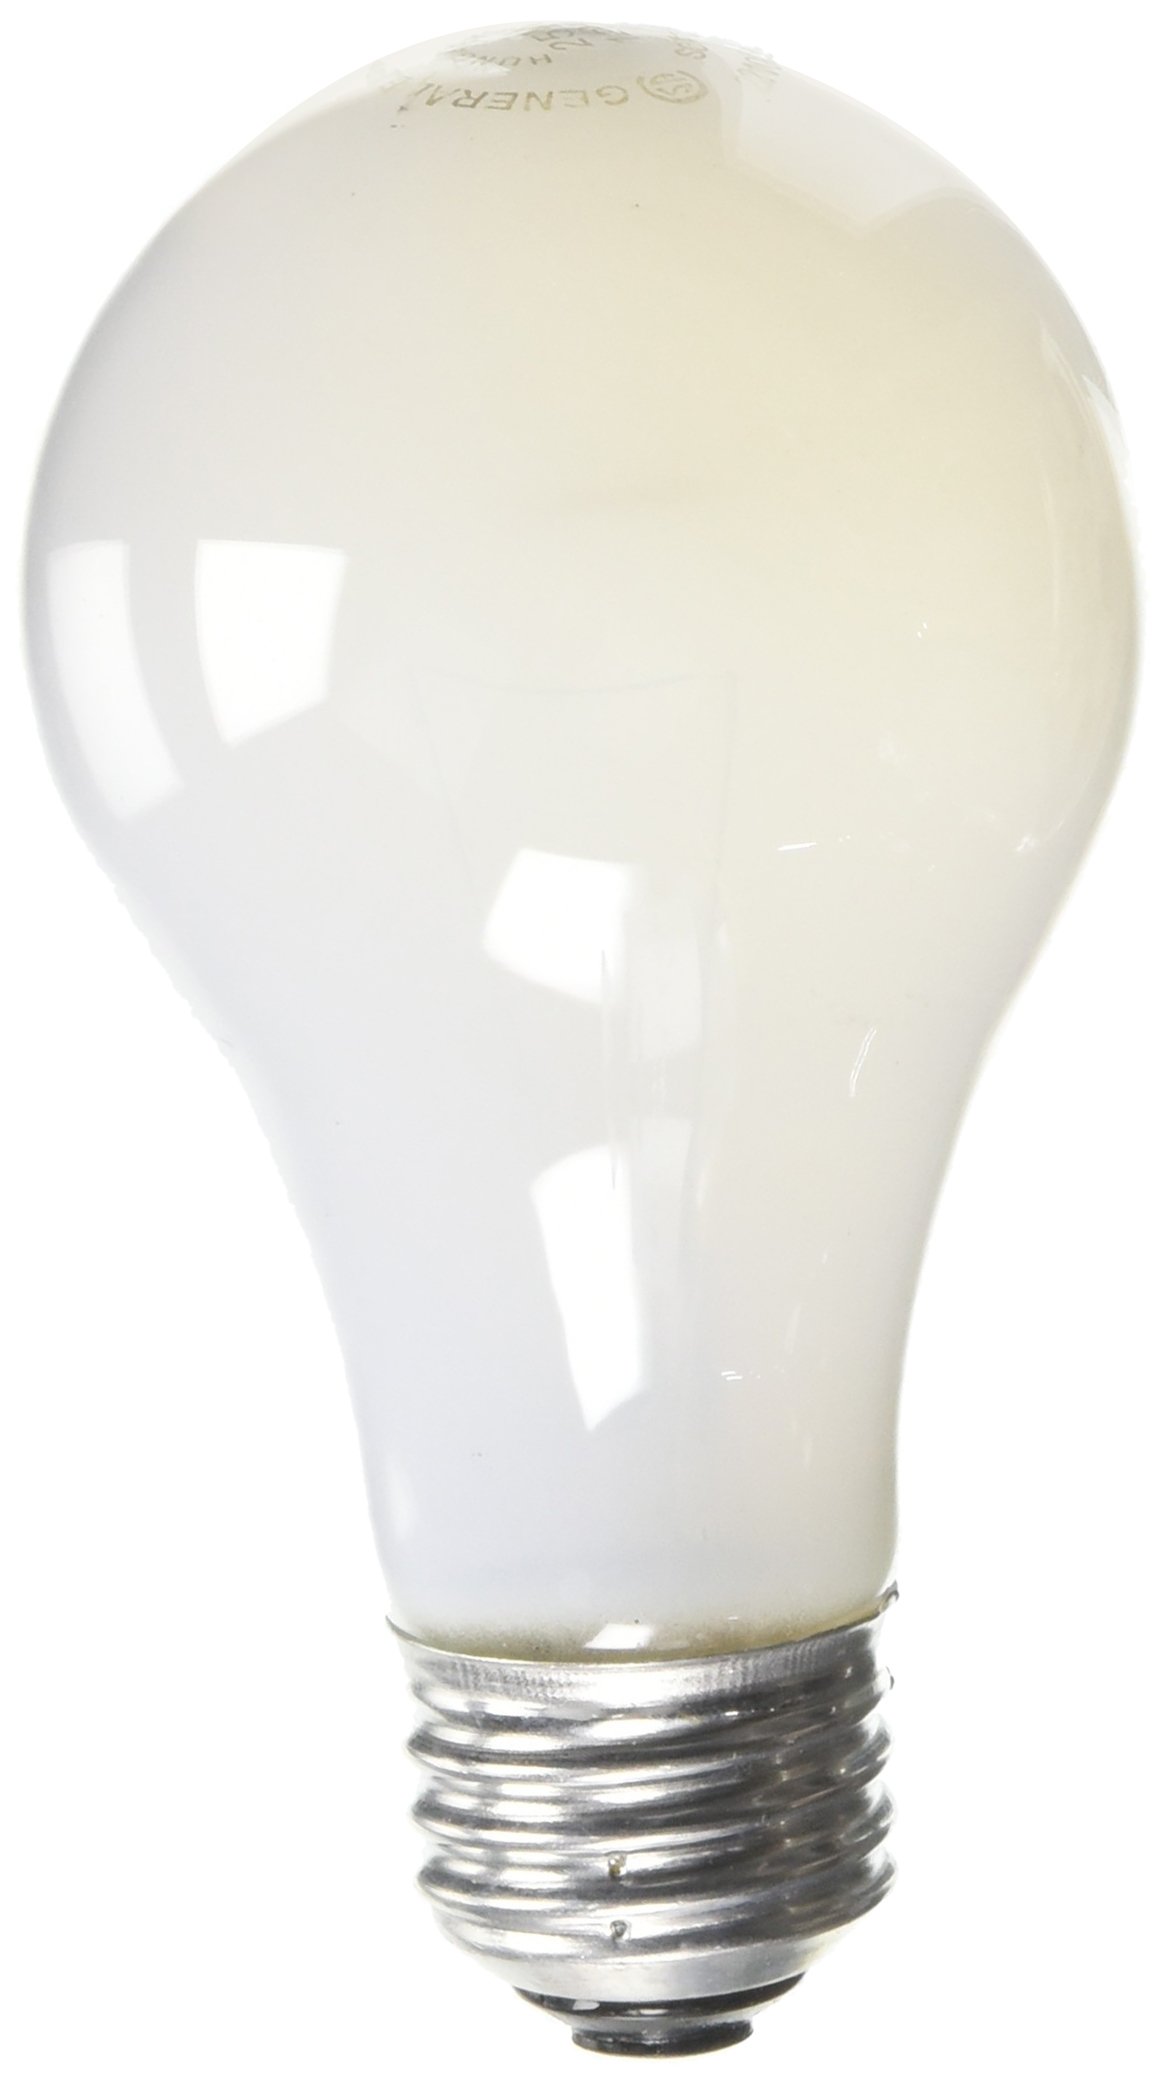 White lightbulb